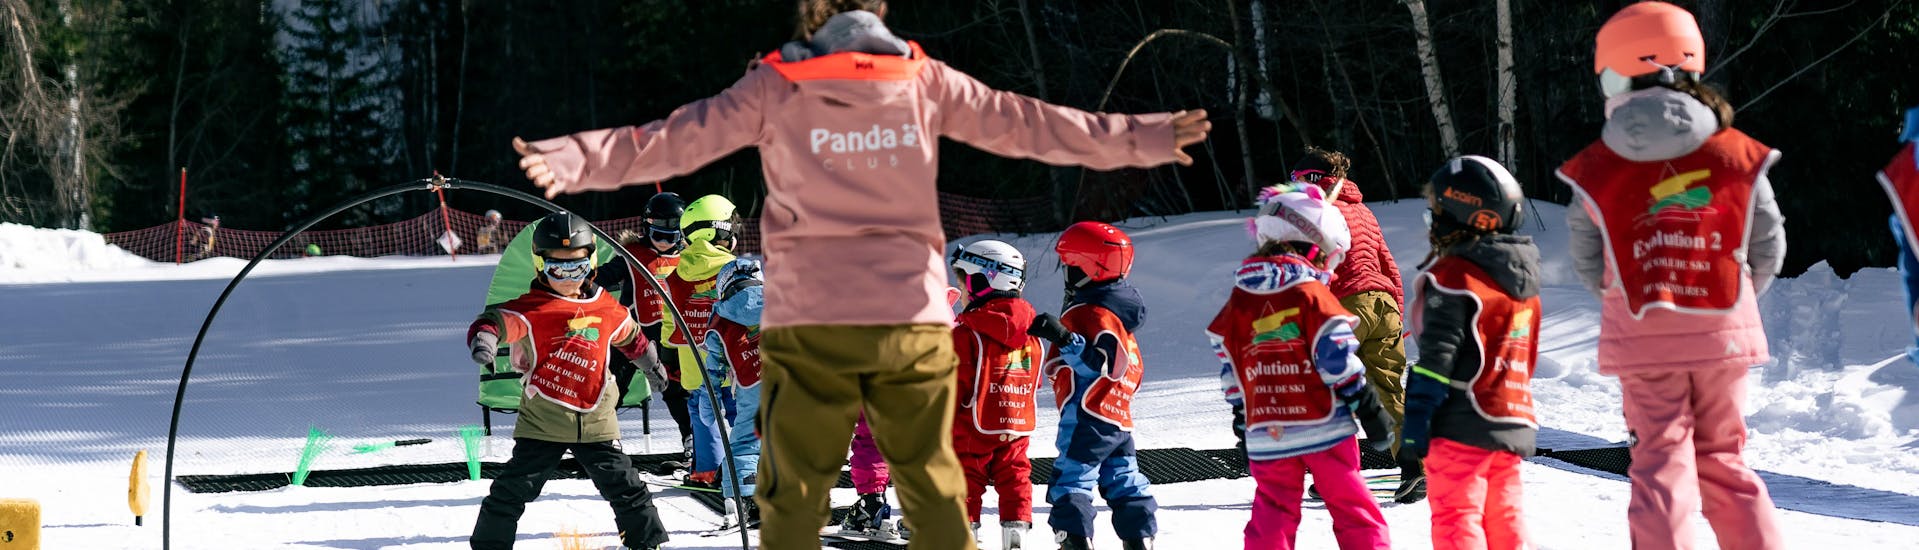 Skilessen voor Kinderen (3-5 j.) in Grands Montets.